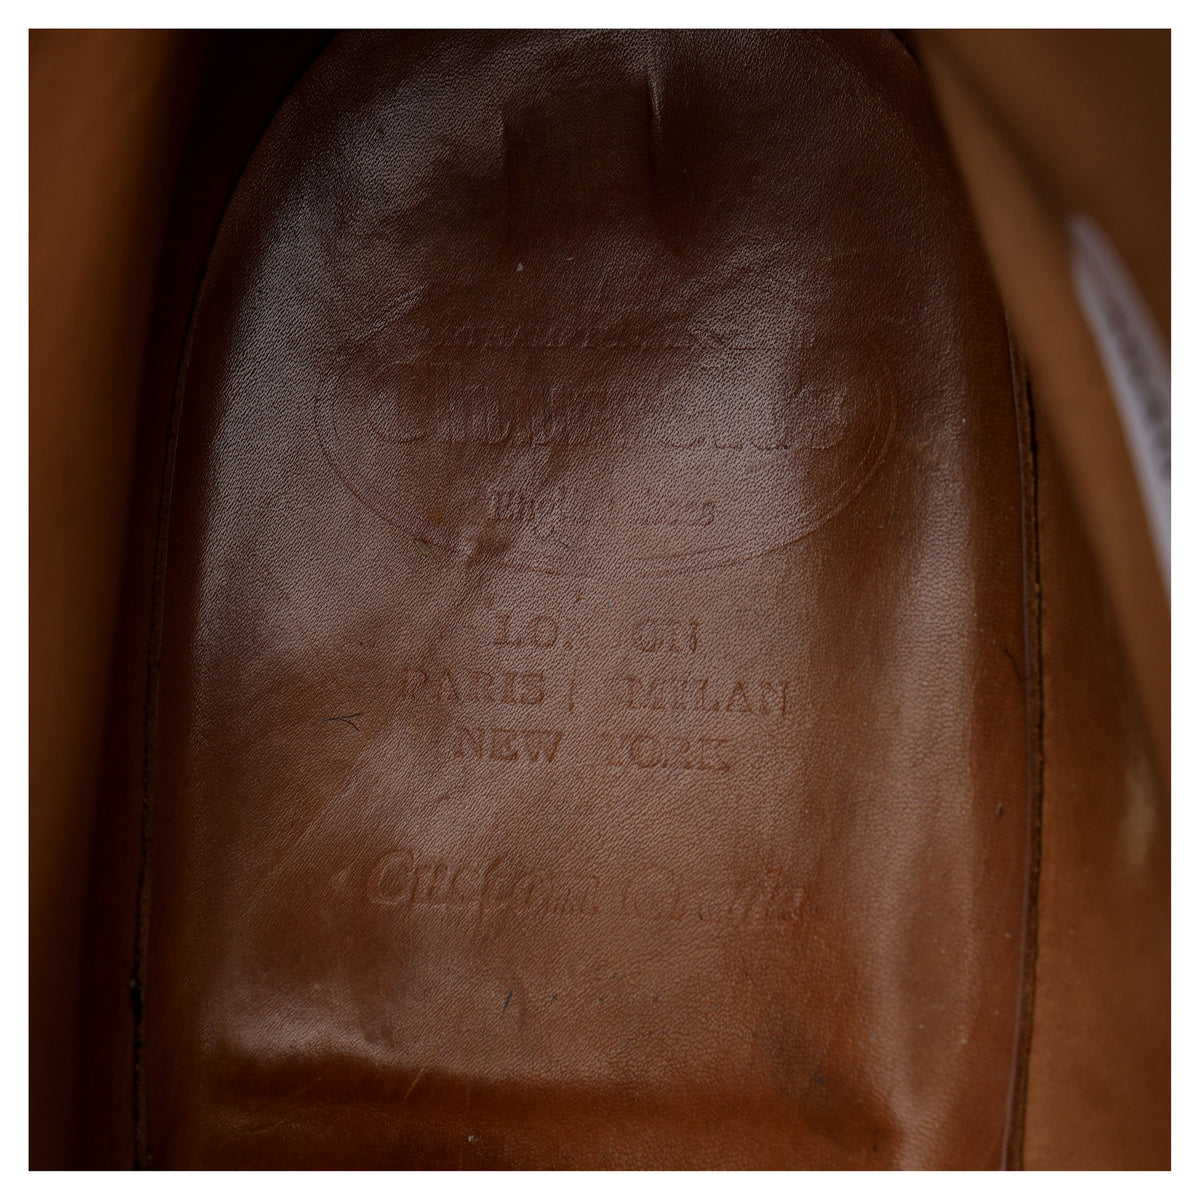 &#39;Tasmania&#39; Black Leather Boots UK 10 F